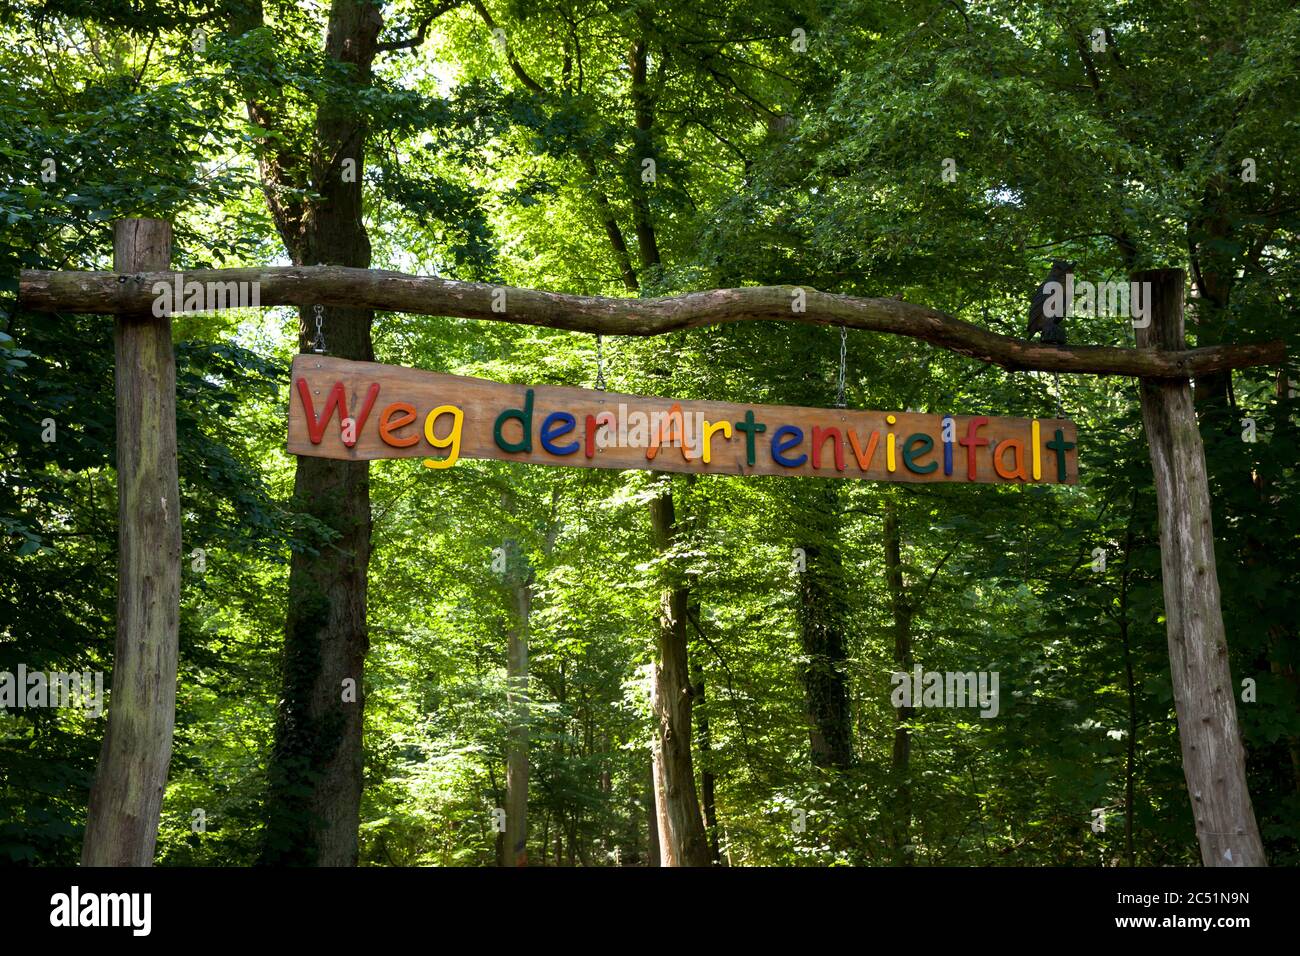 Entrée sur la voie de la biodiversité dans la région de Waldau, dans le Kottenforst, Bonn, Rhénanie-du-Nord-Westphalie, Allemagne. Eingang zum Weg der Artenvielfalt in der Banque D'Images